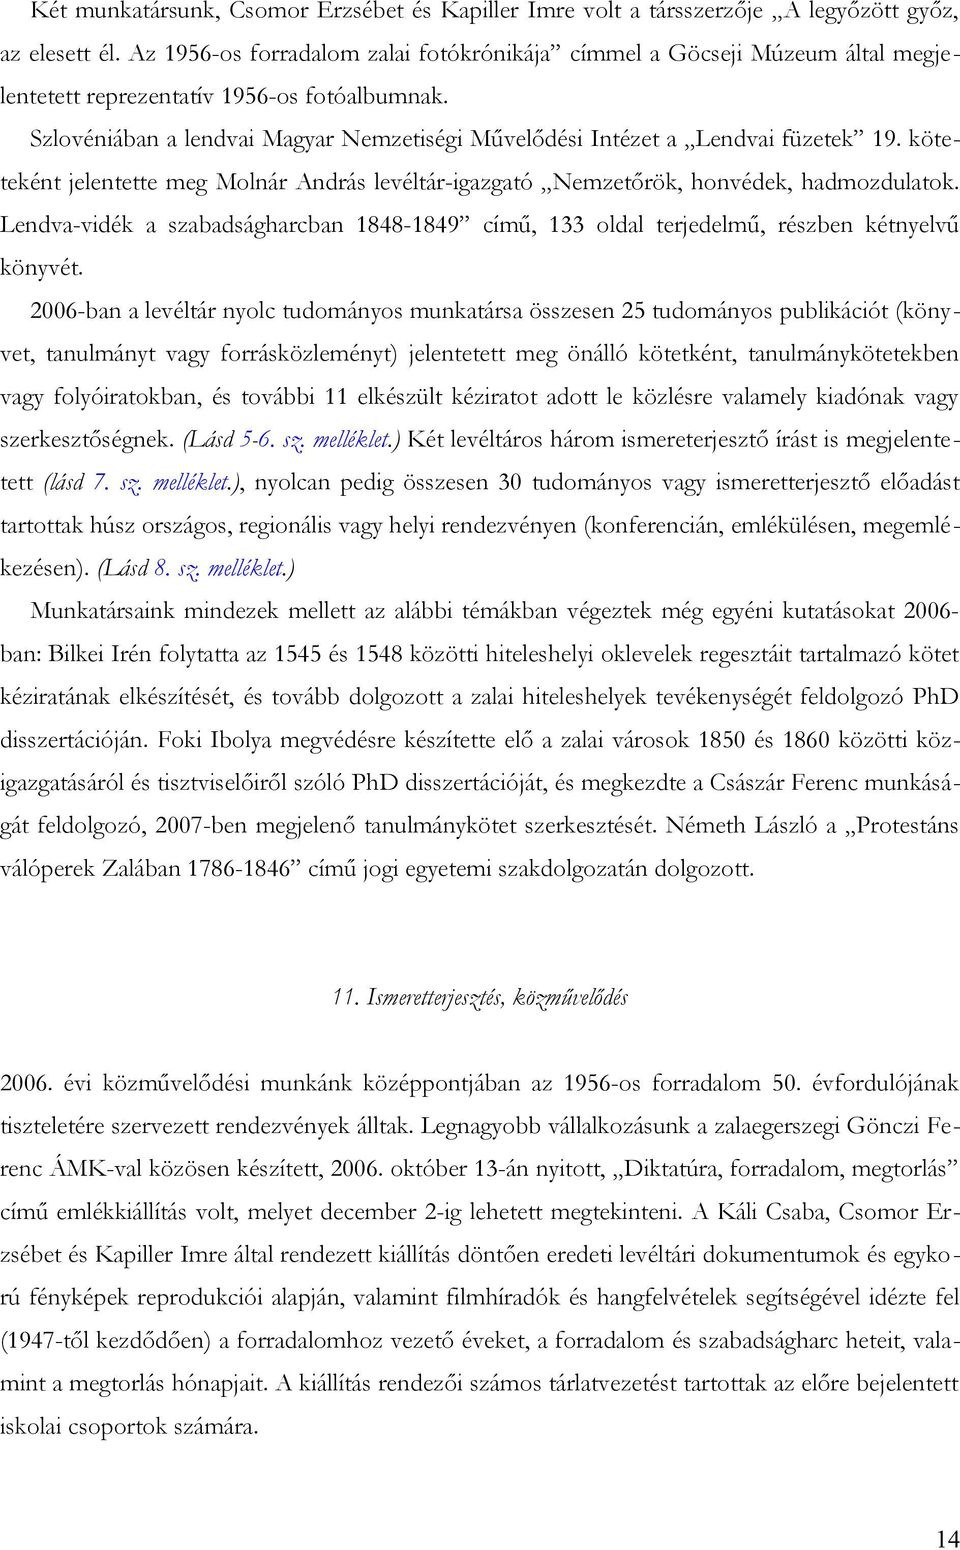 Szlovéniában a lendvai Magyar Nemzetiségi Művelődési Intézet a Lendvai füzetek 19. köteteként jelentette meg Molnár András levéltár-igazgató Nemzetőrök, honvédek, hadmozdulatok.